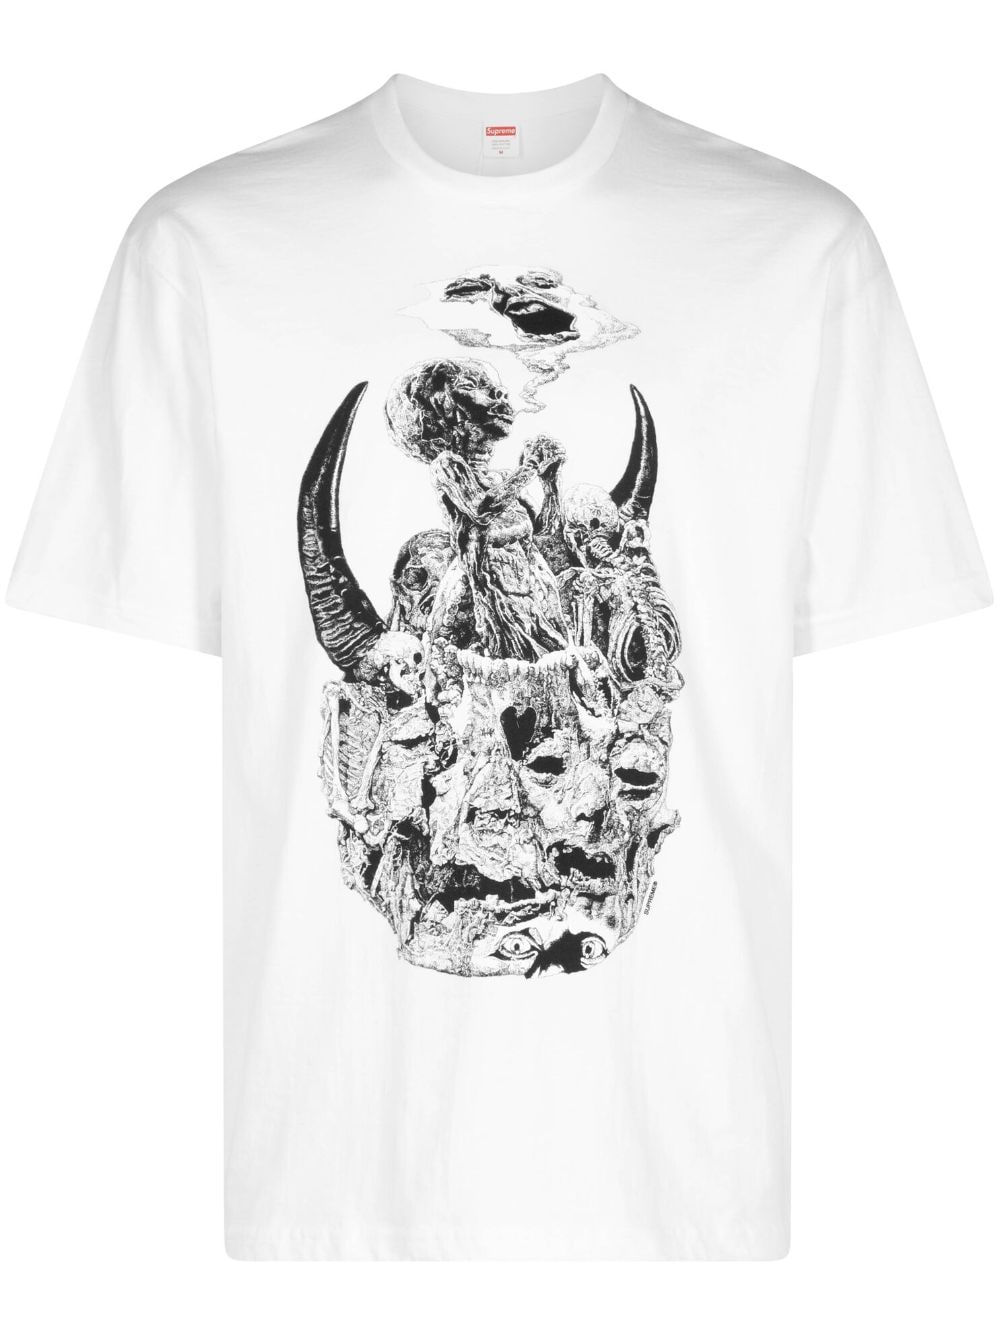 Supreme Mutants "White" T-shirt von Supreme